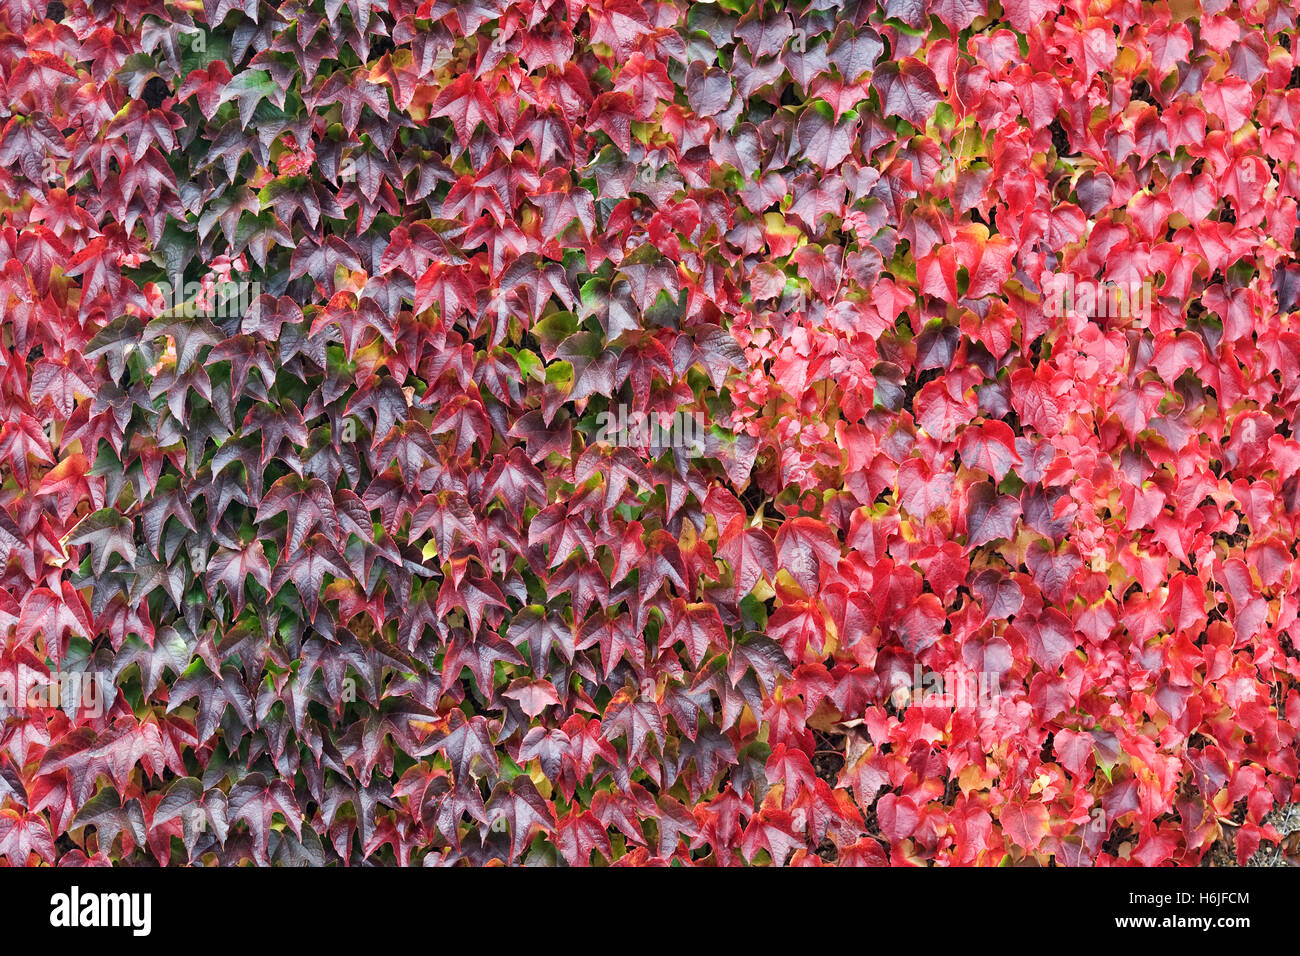 Parthenocissus tricuspidata. Boston Ivy leaves in Autumn. Stock Photo